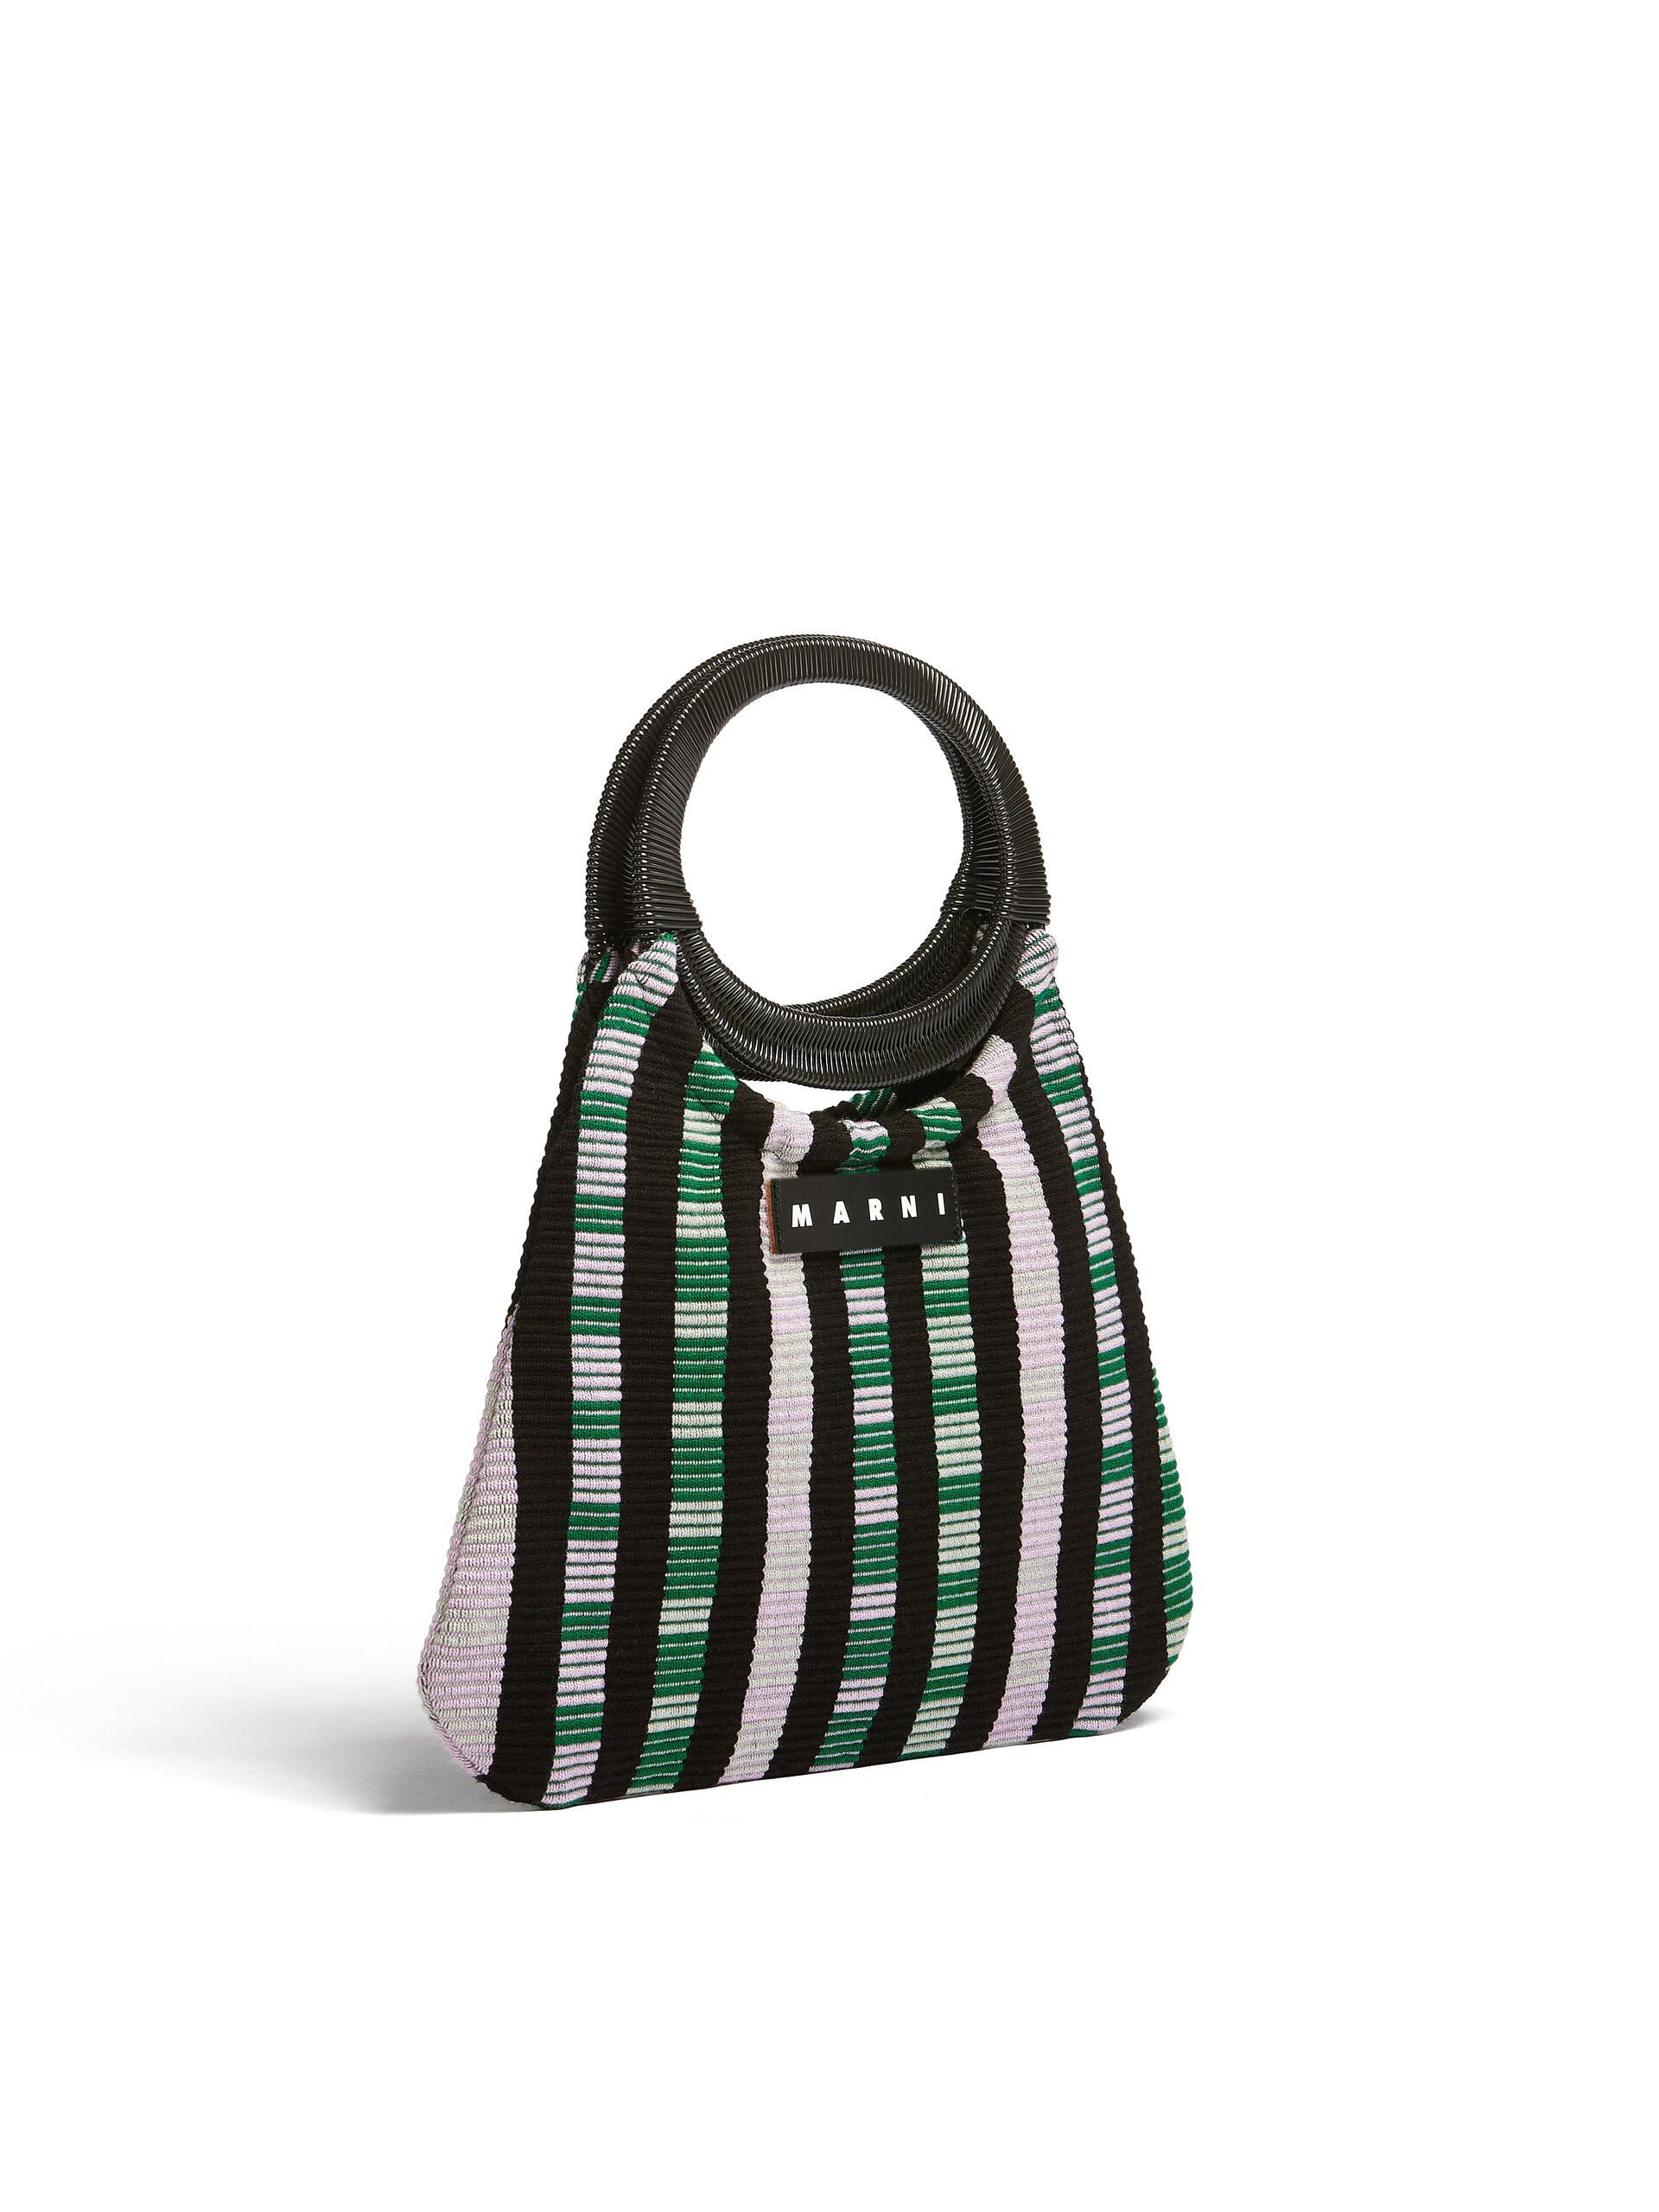 MARNI MARKET bag in multicolor striped cotton - Bags - Image 2